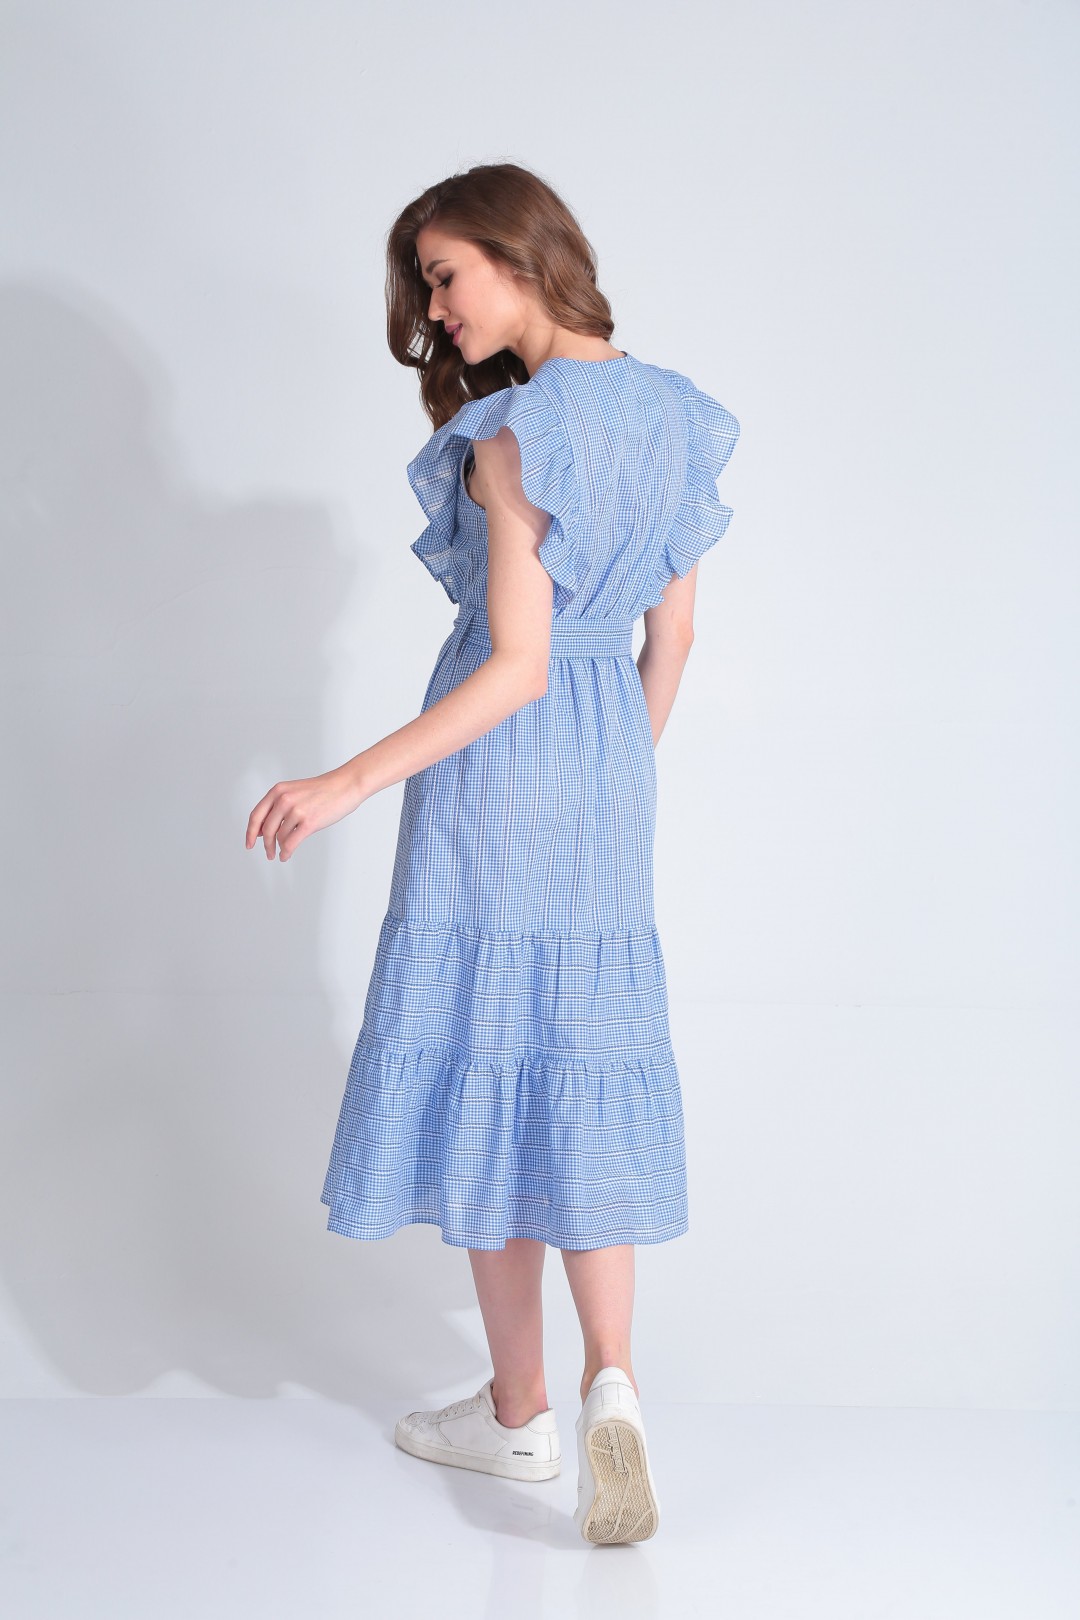 Платье Карина Делюкс В-279 голубой